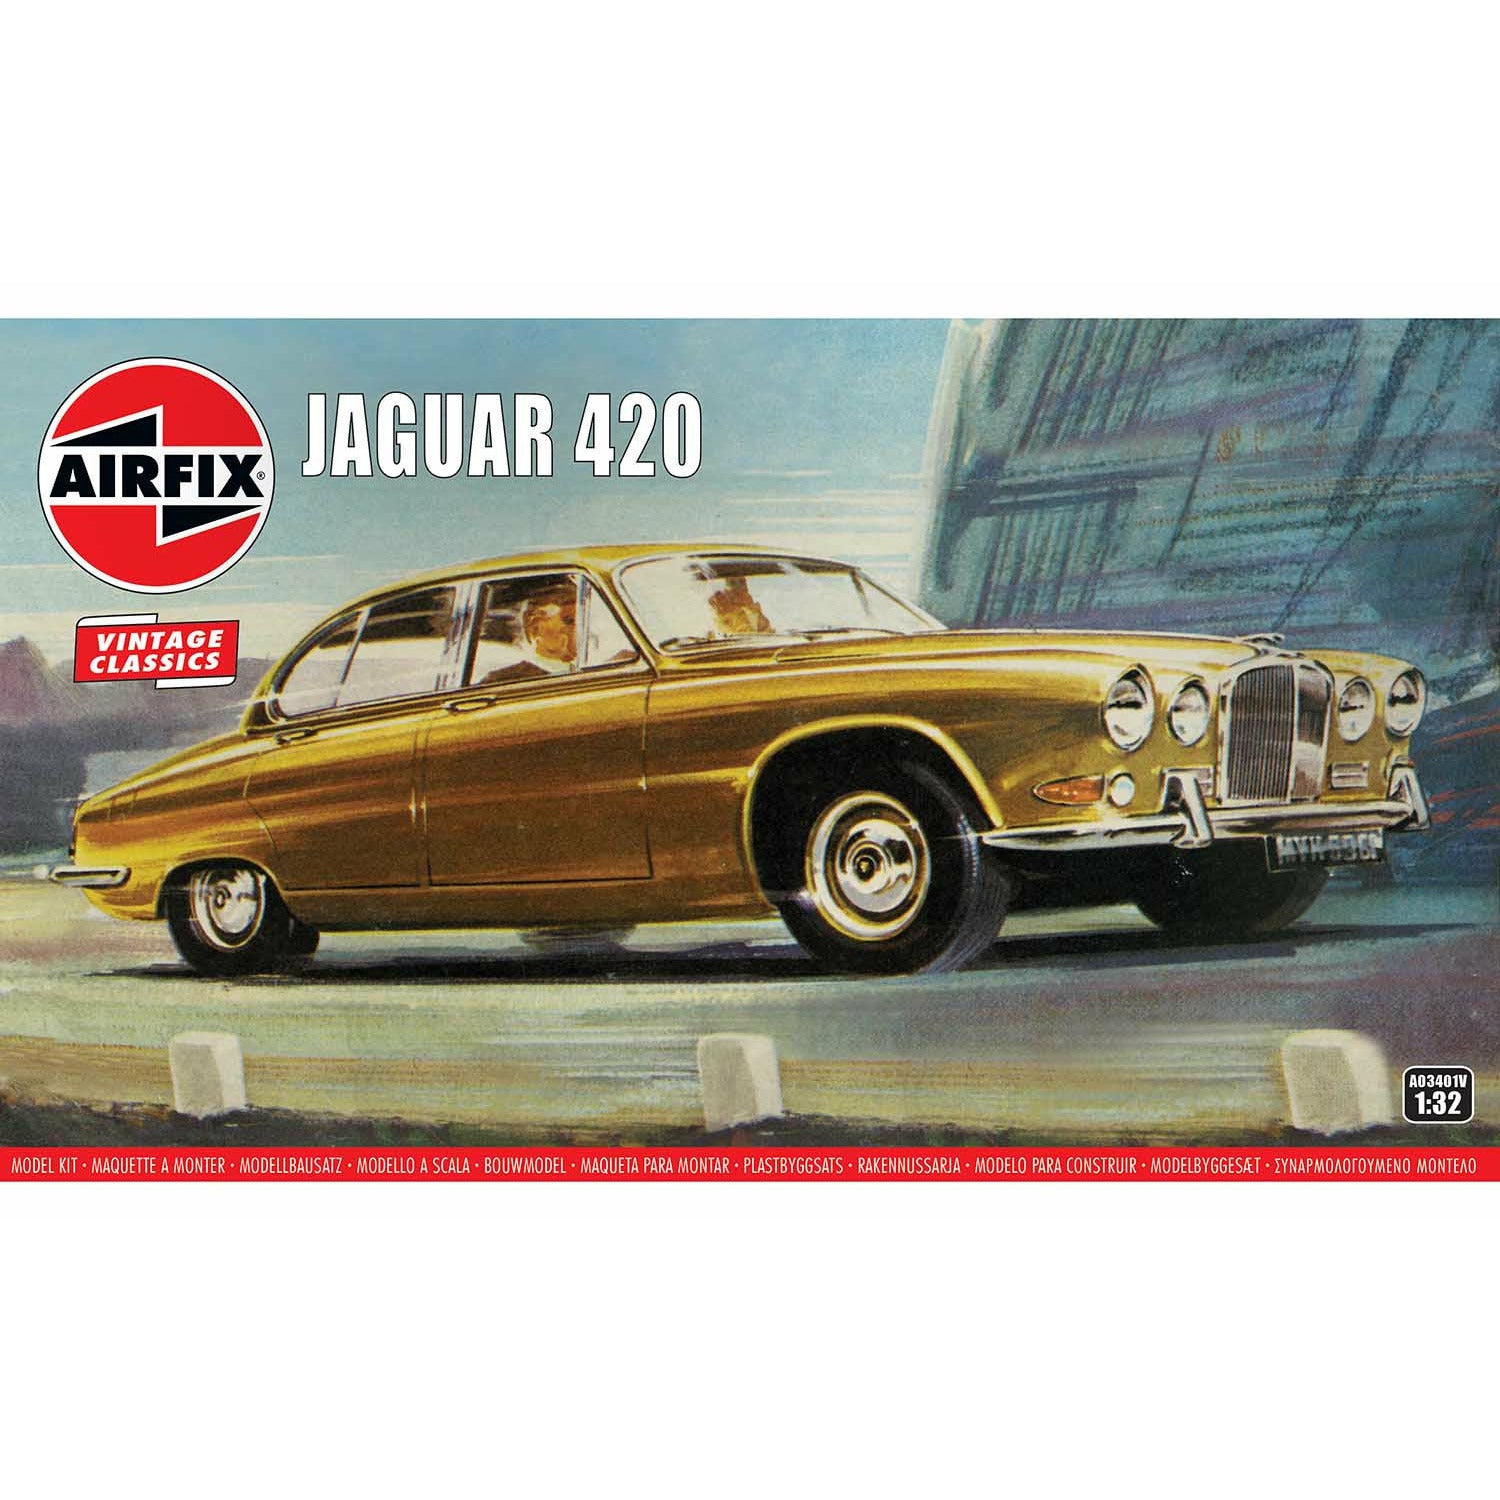 Jaguar 420 1/32 #03401 by Airfix